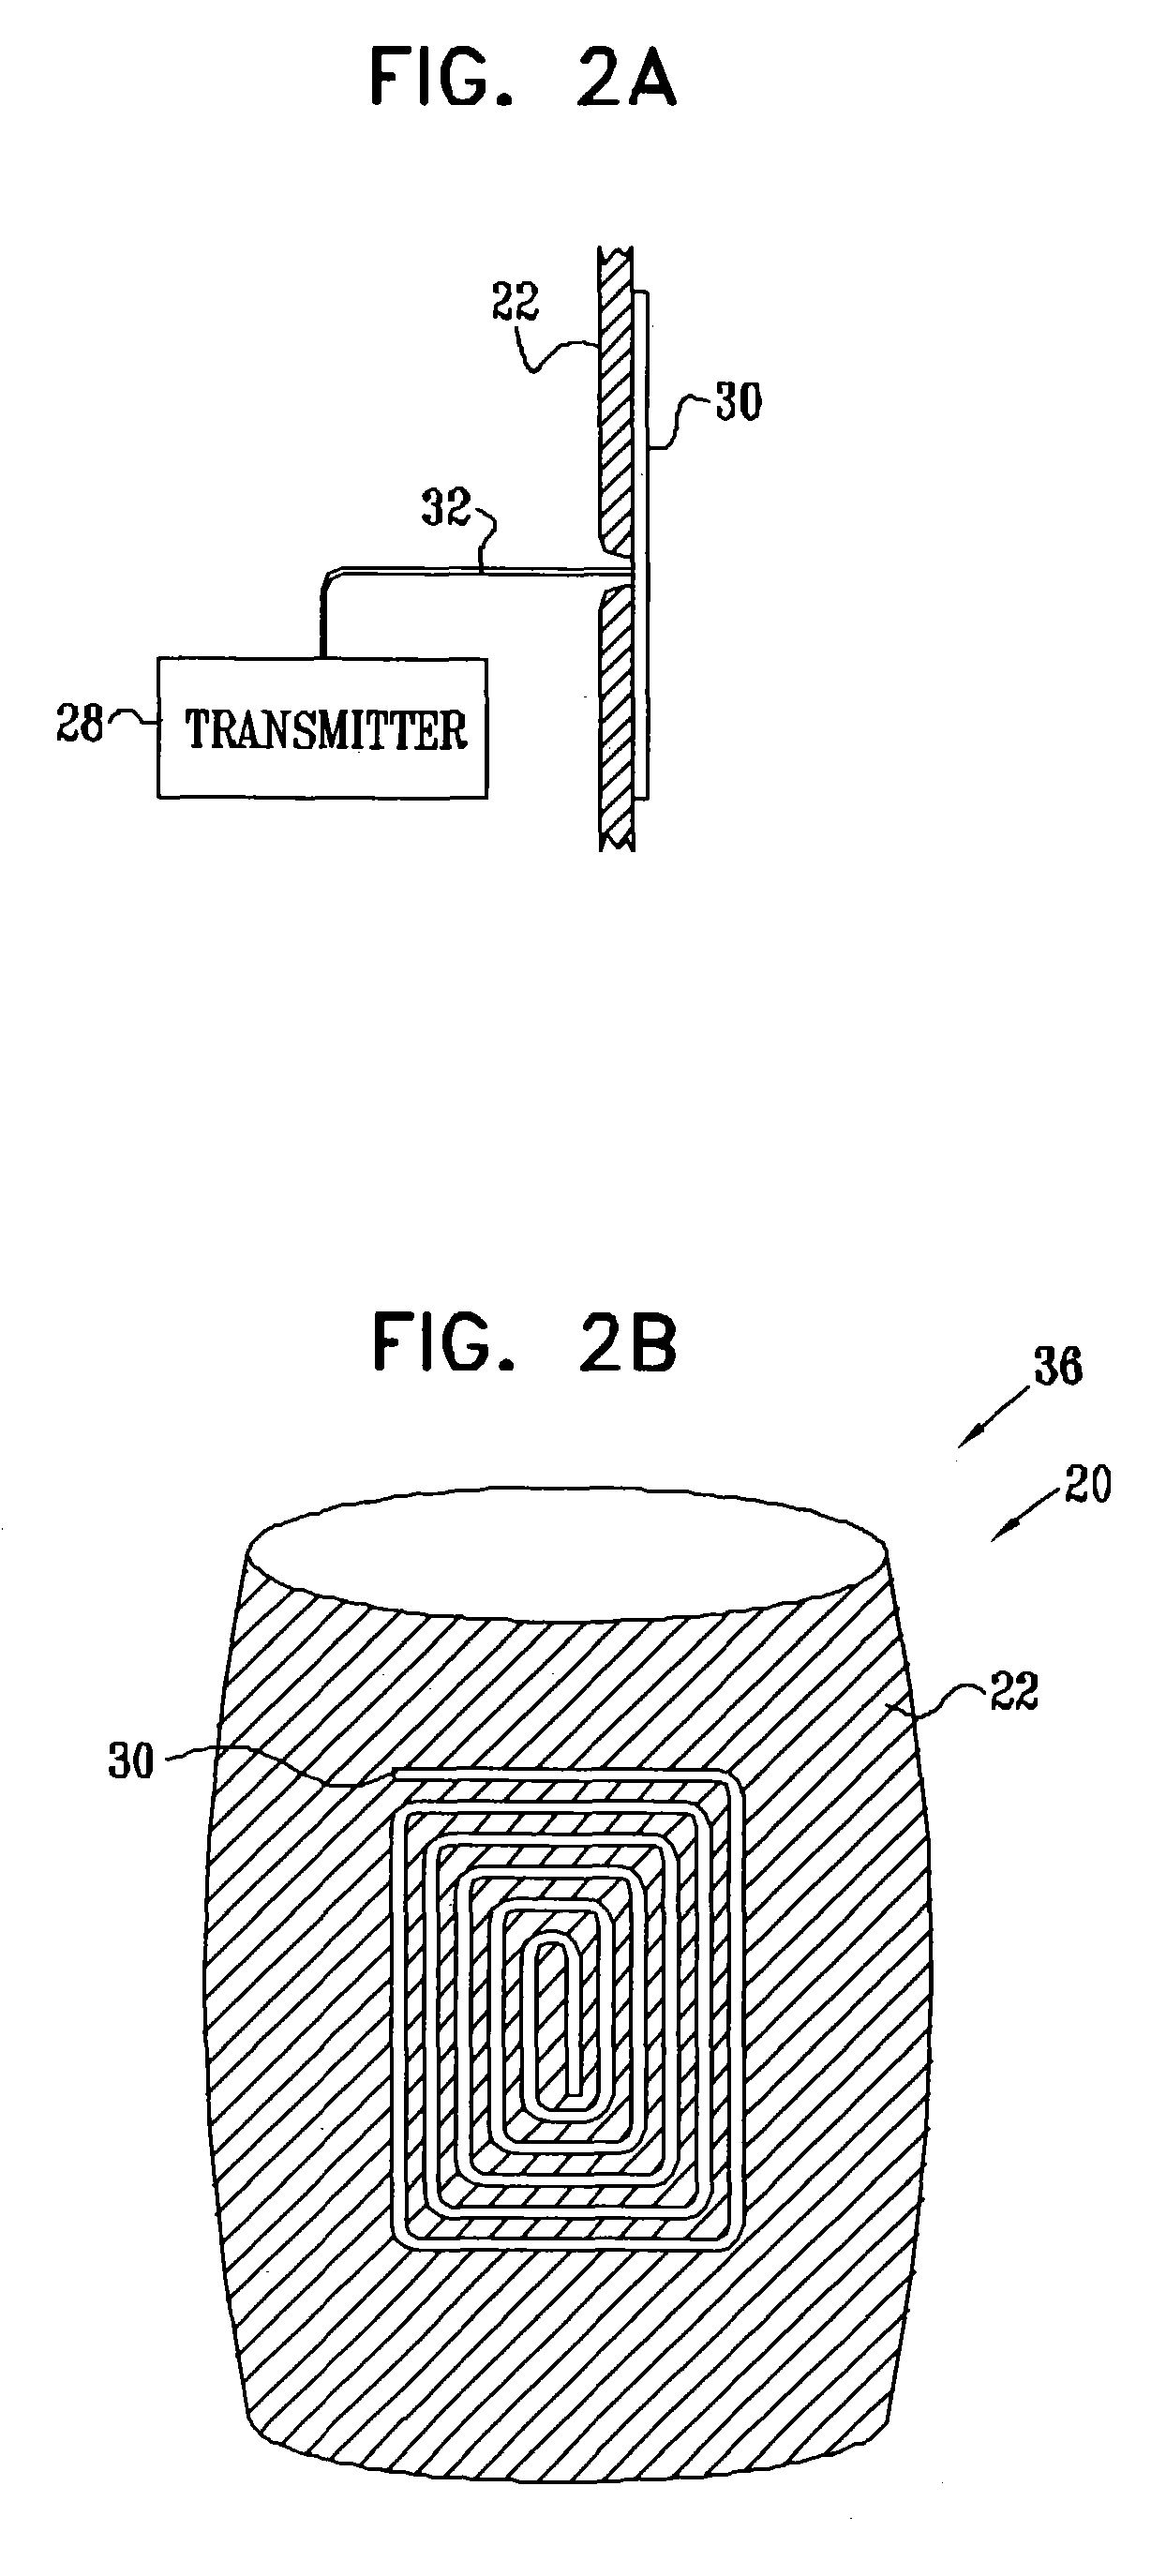 Encapsulated sensor with external antenna